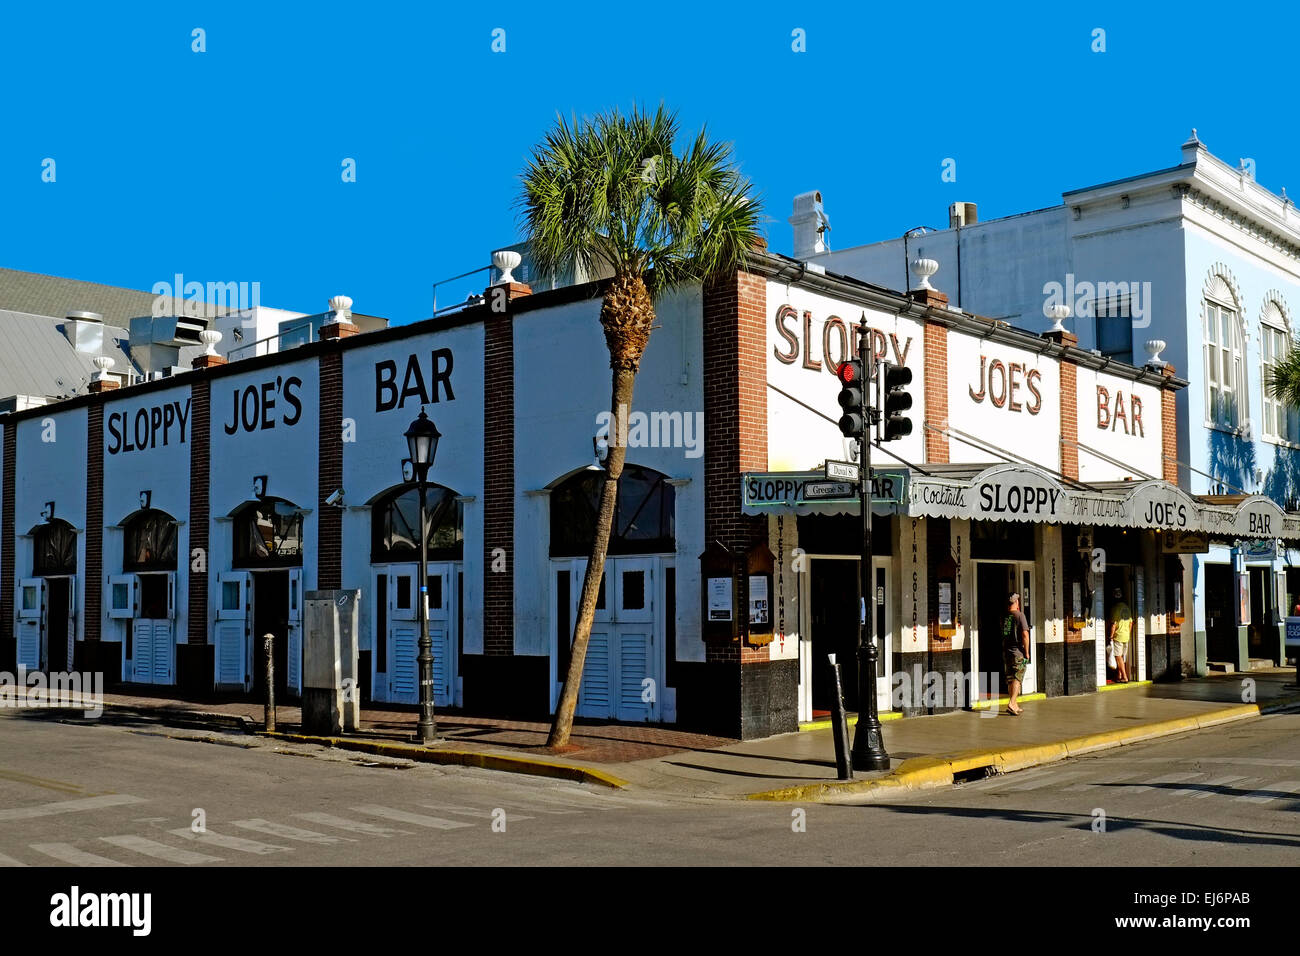 Sloppy Joe's Bar Key West FL Floride destination pour l'ouest de Tampa Crusie Caraïbes Banque D'Images